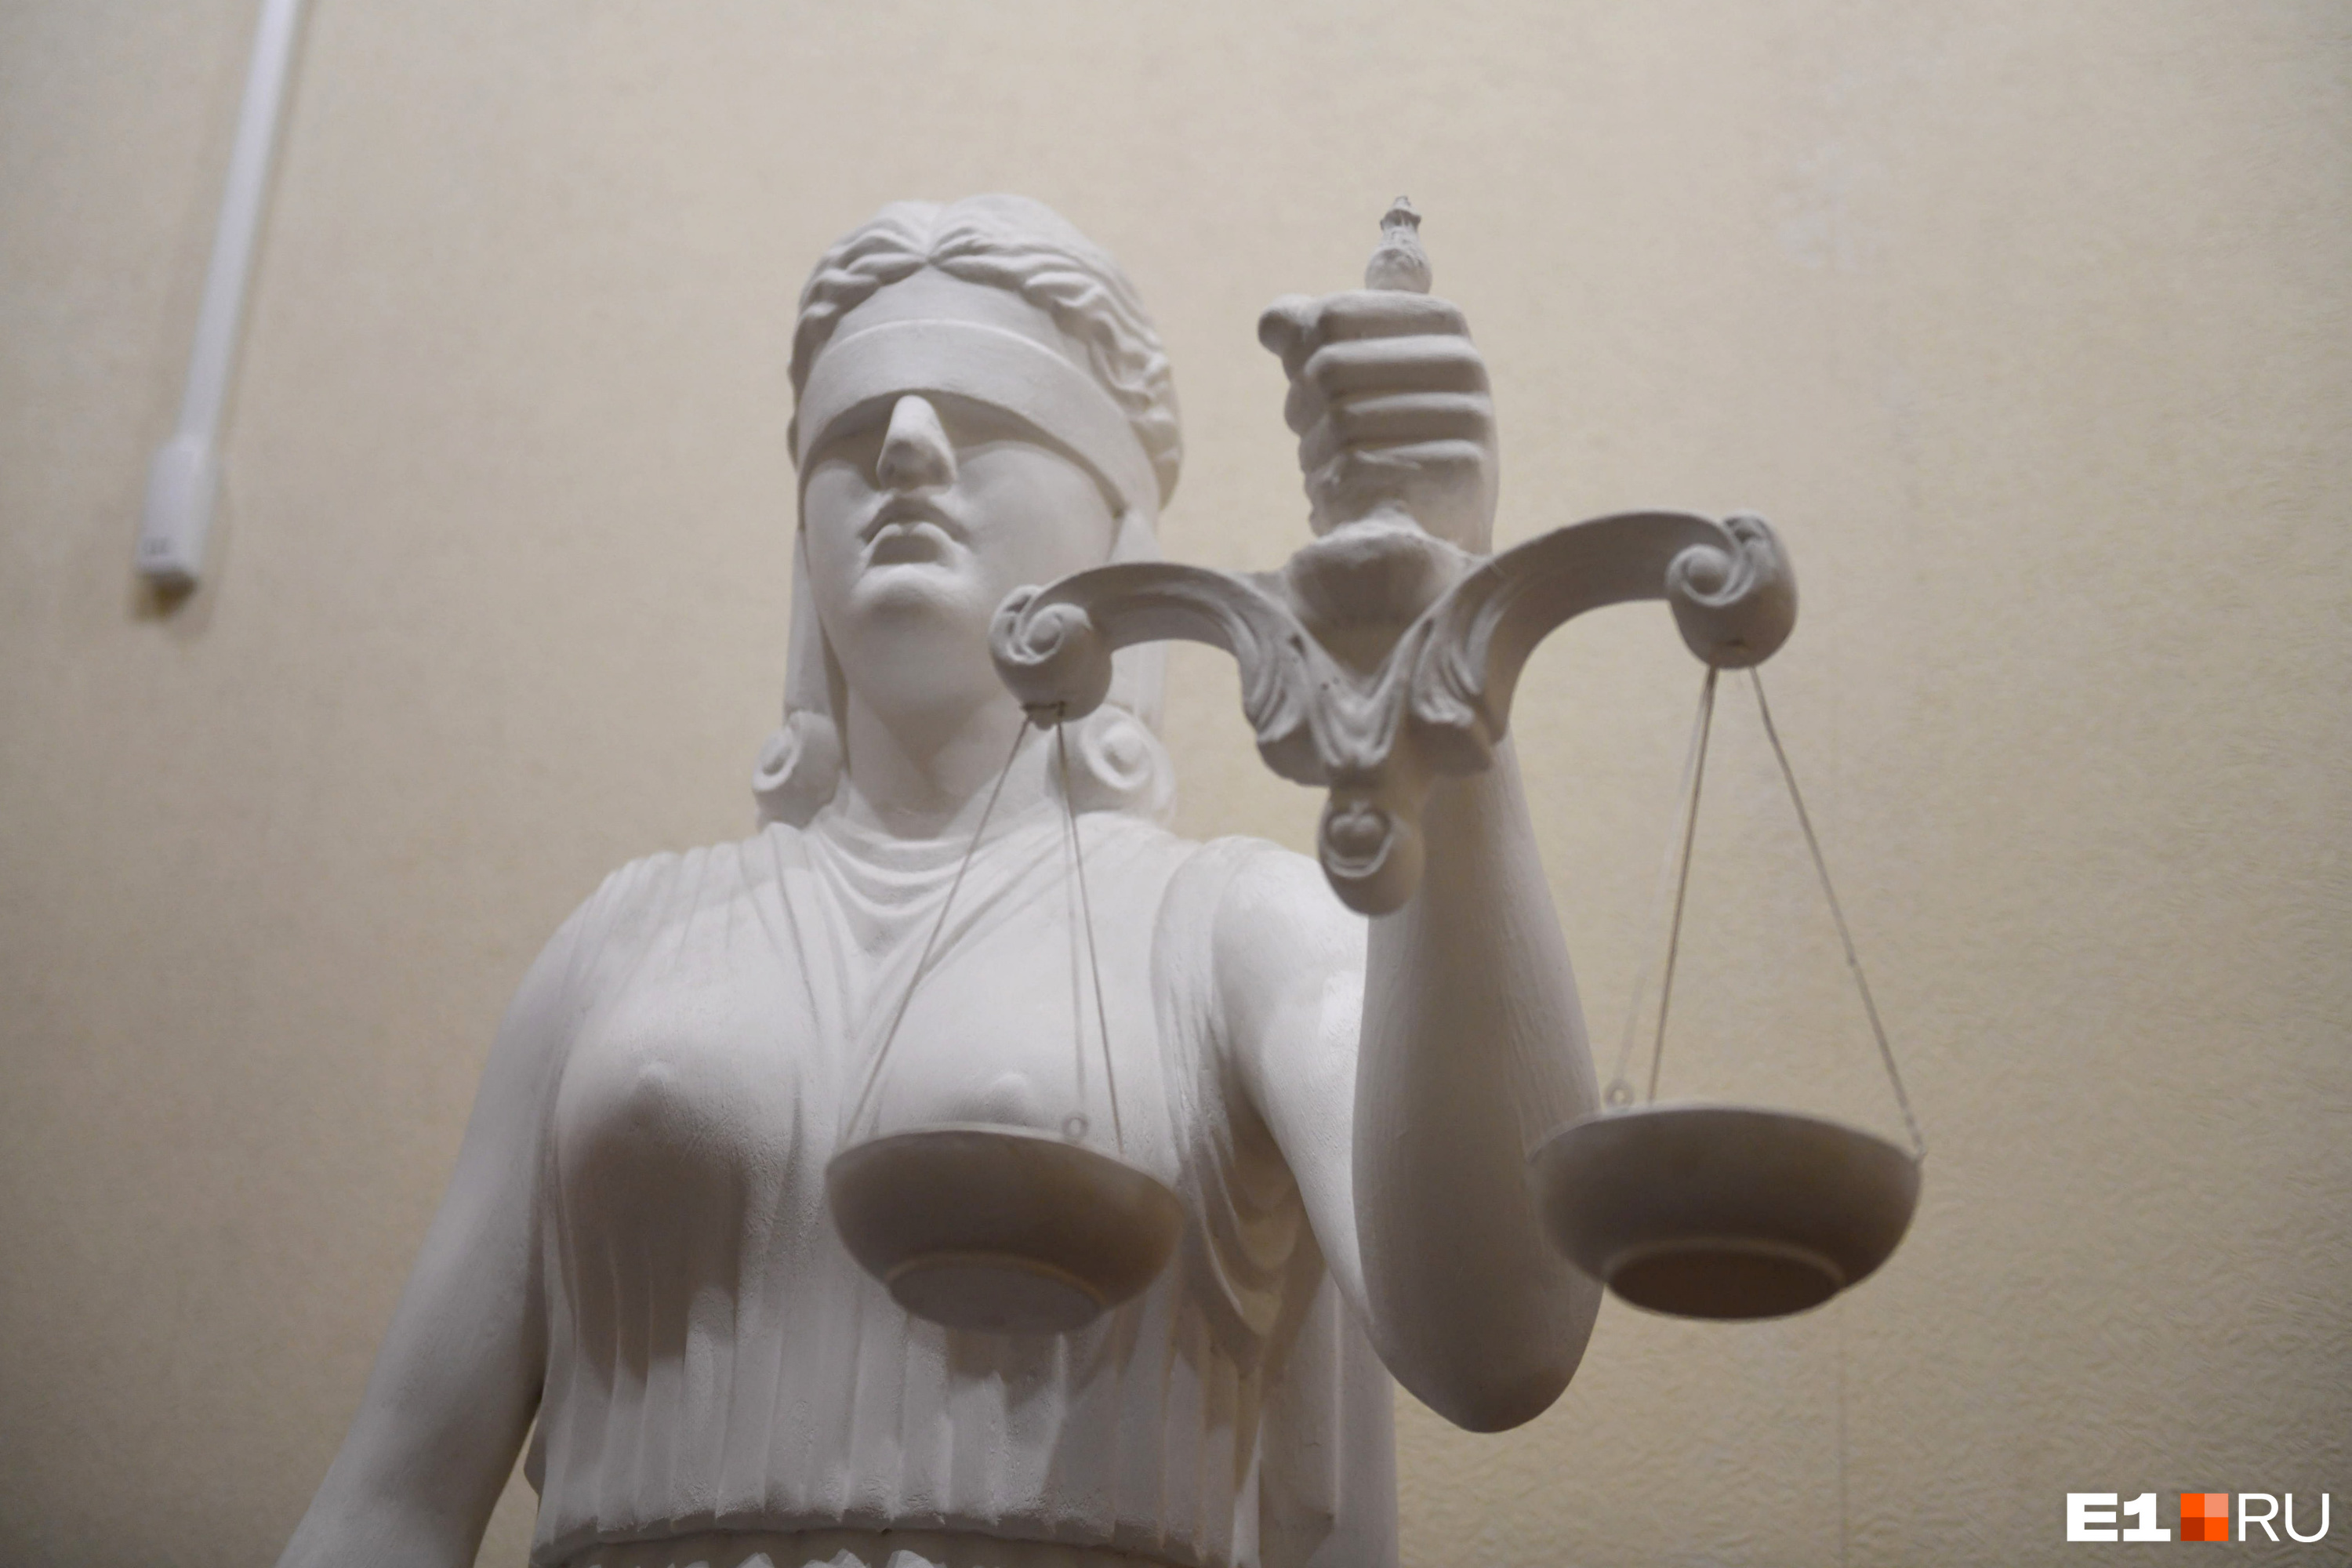 Суд отменил приговор жителю Читы, обвинённому в попытке изнасиловать падчерицу